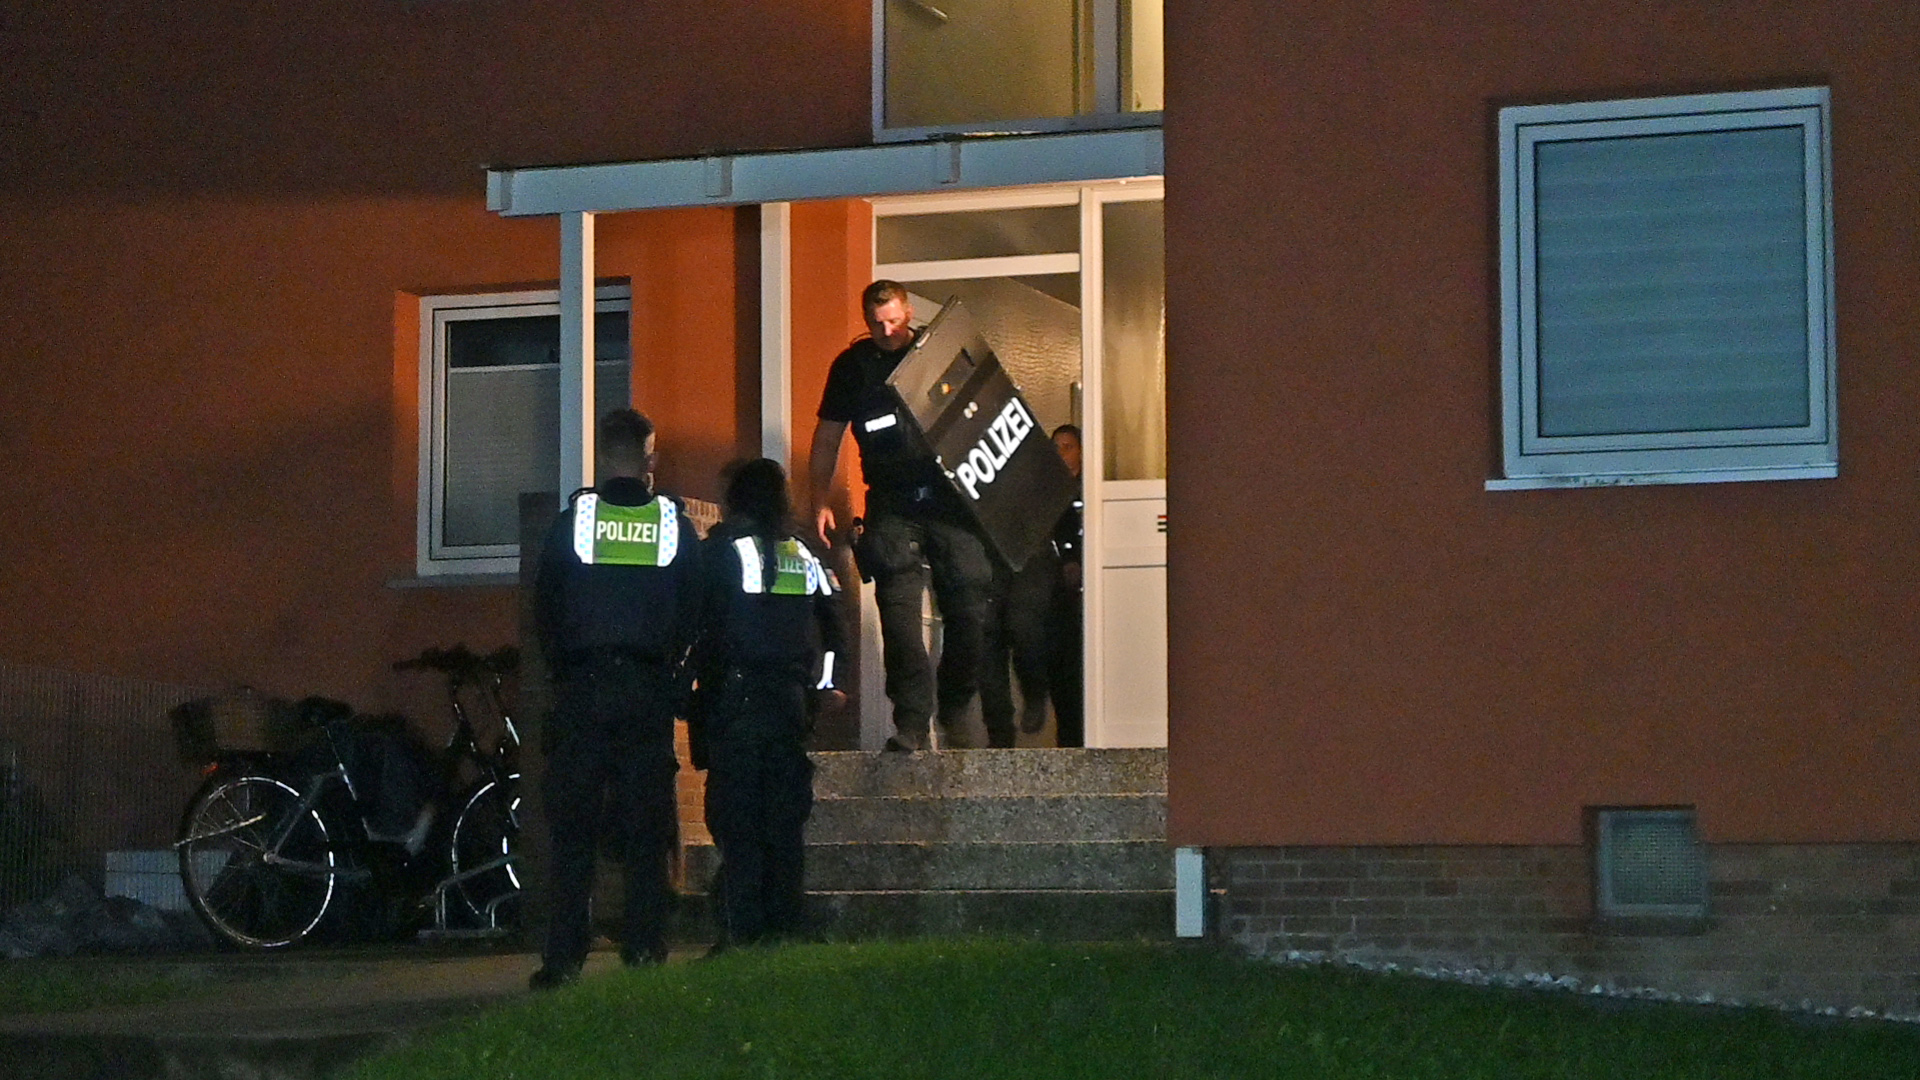 Polizisten vor dem Haus, in dem der 23-Jährige wohnt, einer trägt einen Schild